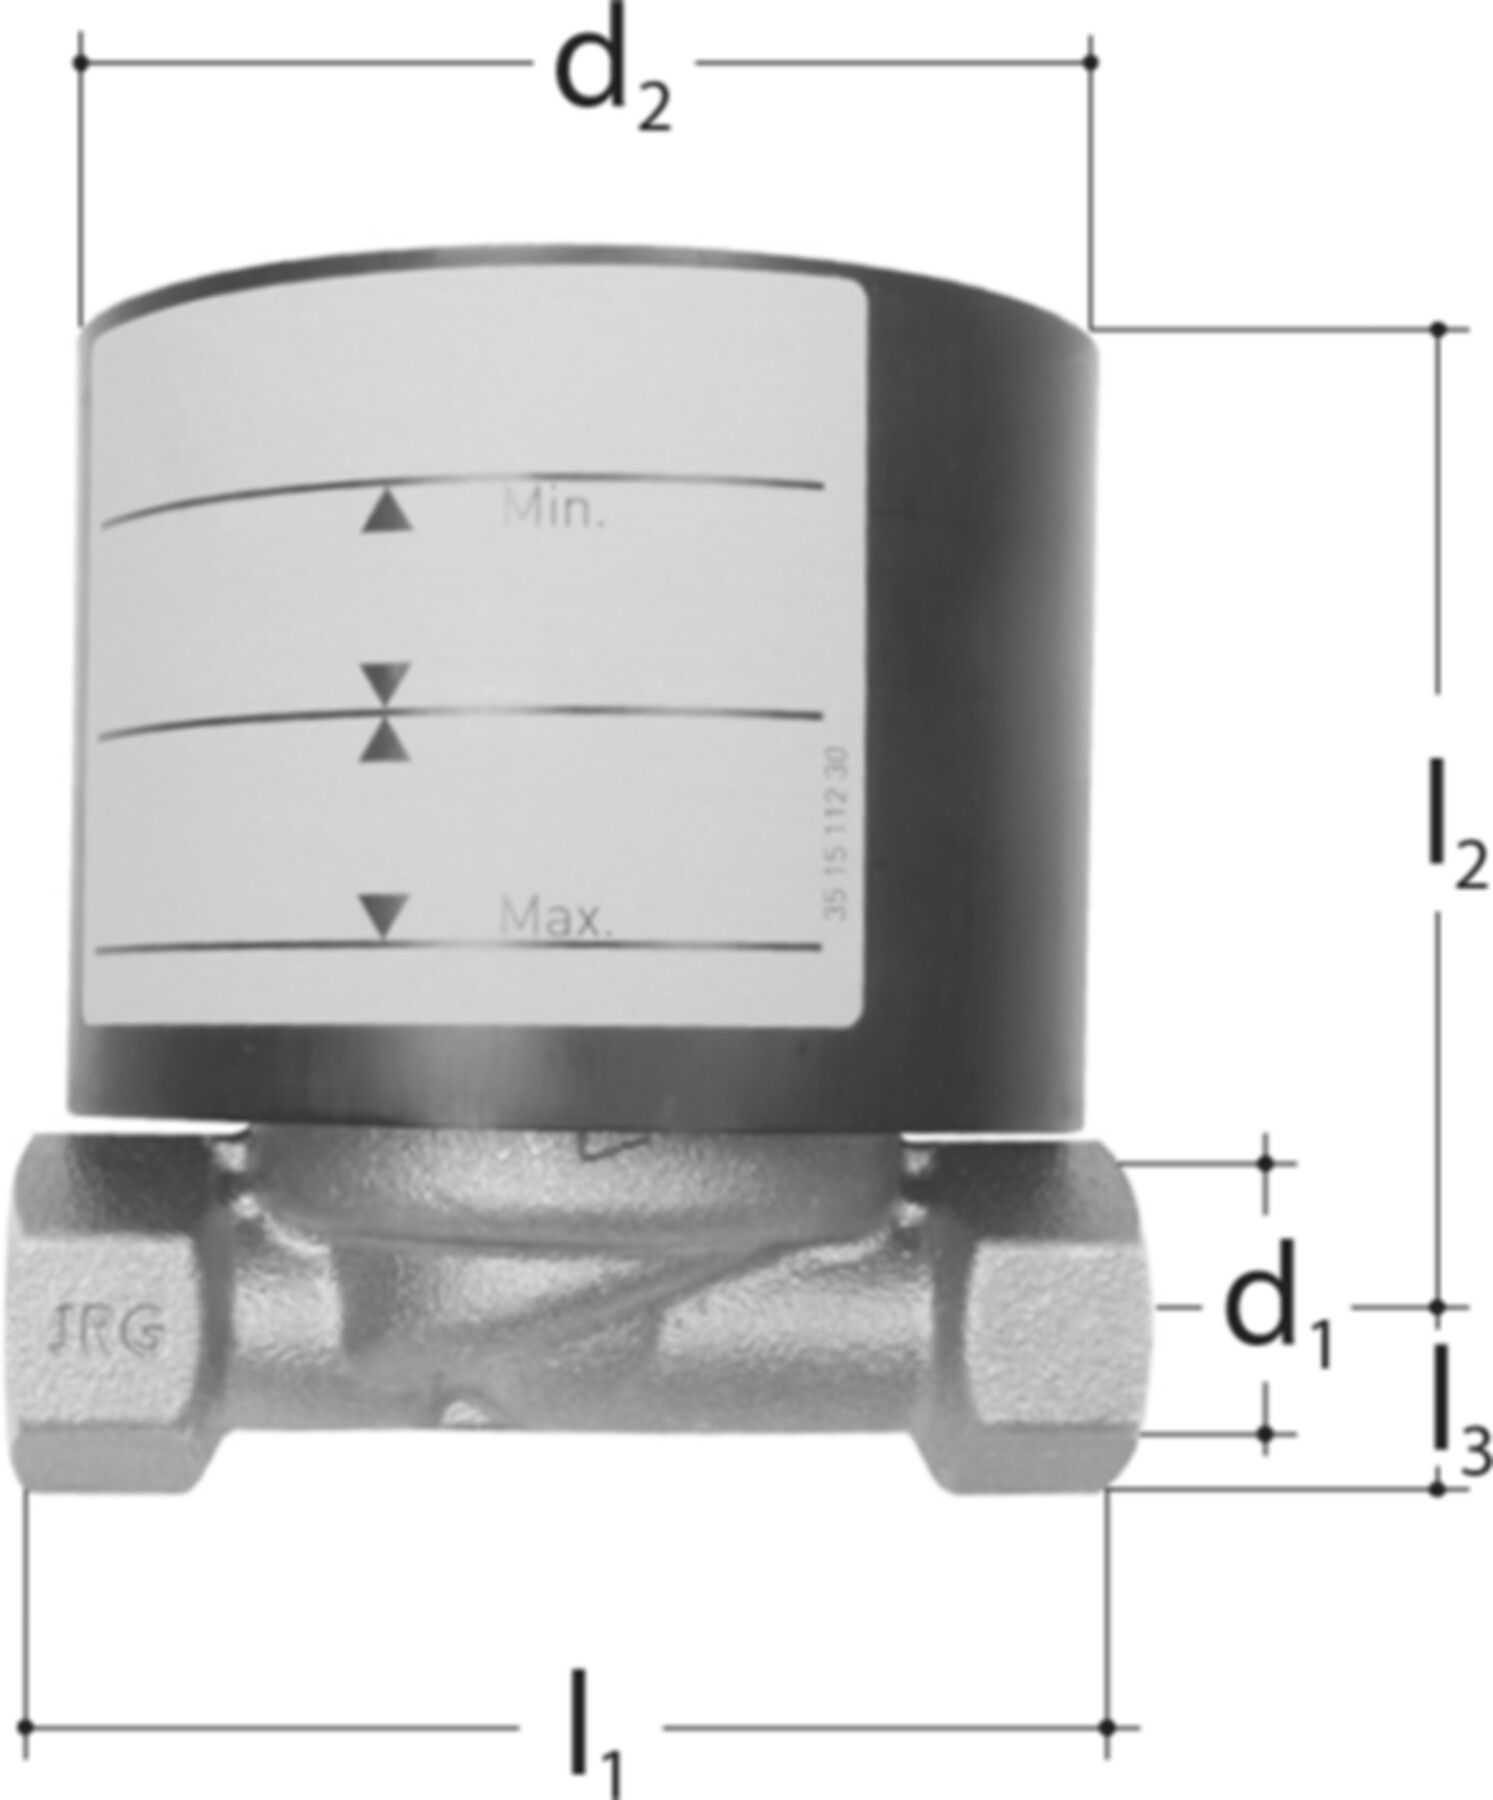 Einrohranschlussgehäuse KOAX 3/4" 5456.325 zu UPZ +m KOAX Zähler - JRG Sanipex-Rohre und Formstücke